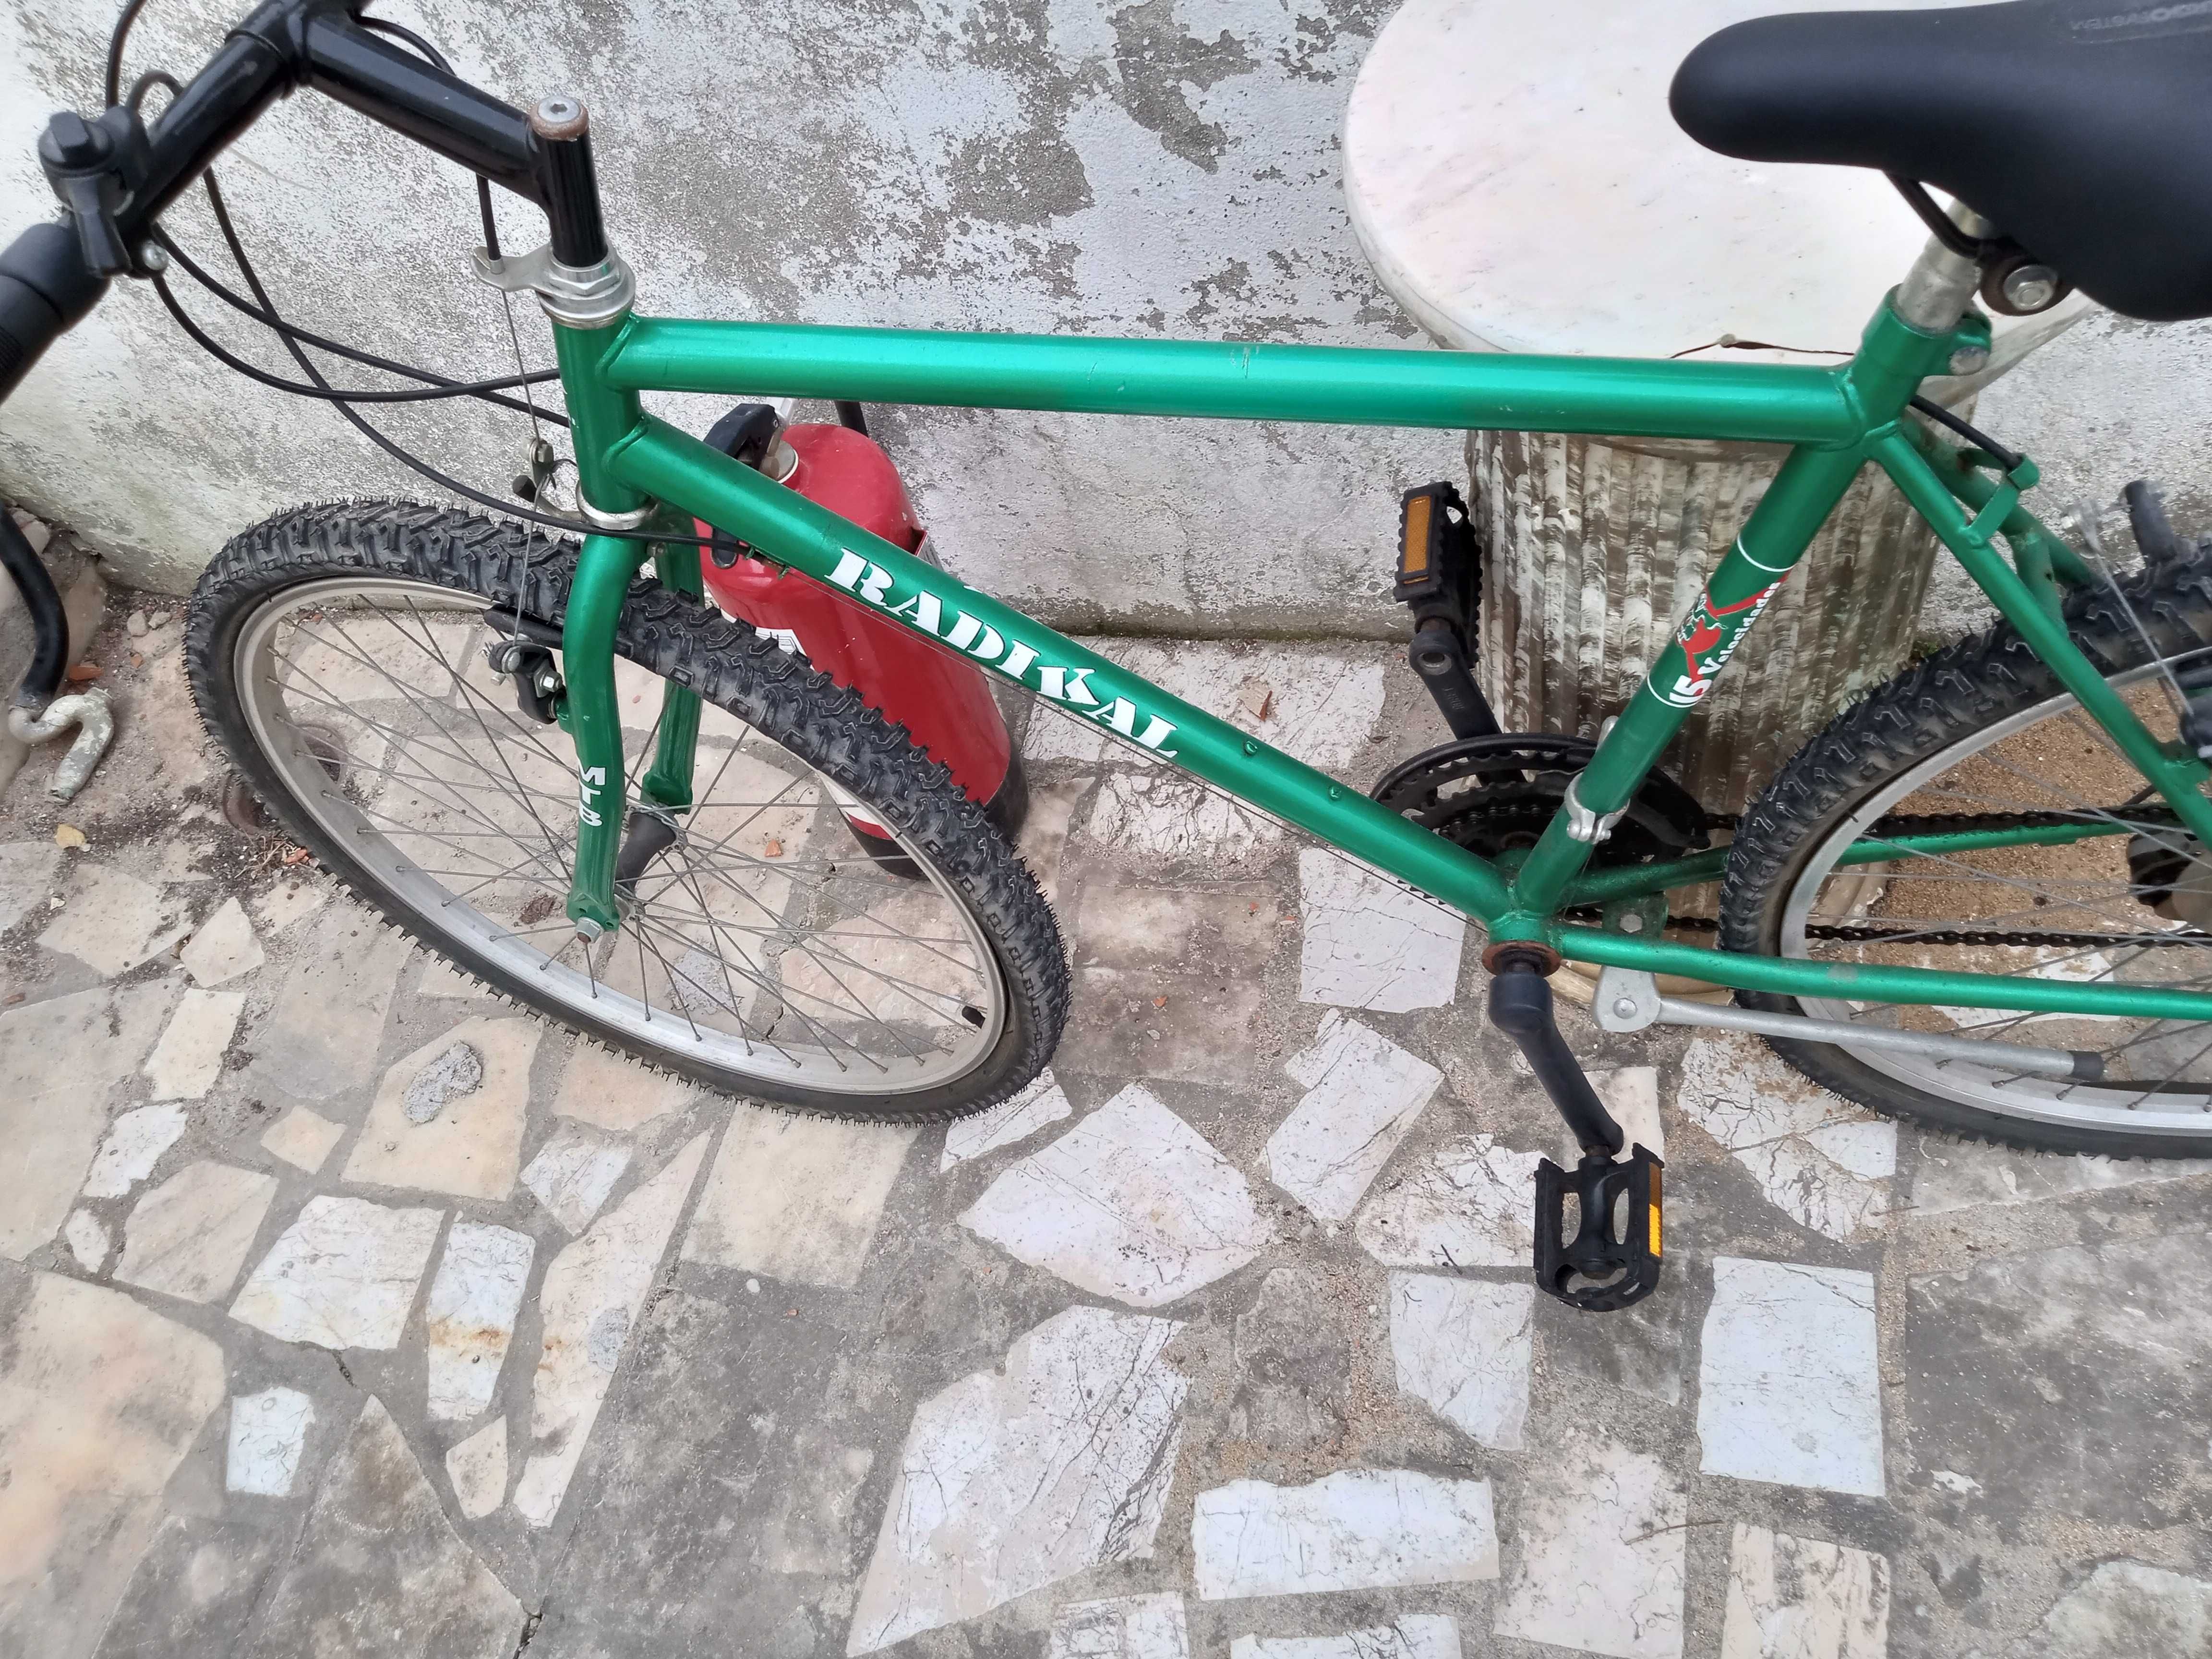 Bicicleta usada bem conservado